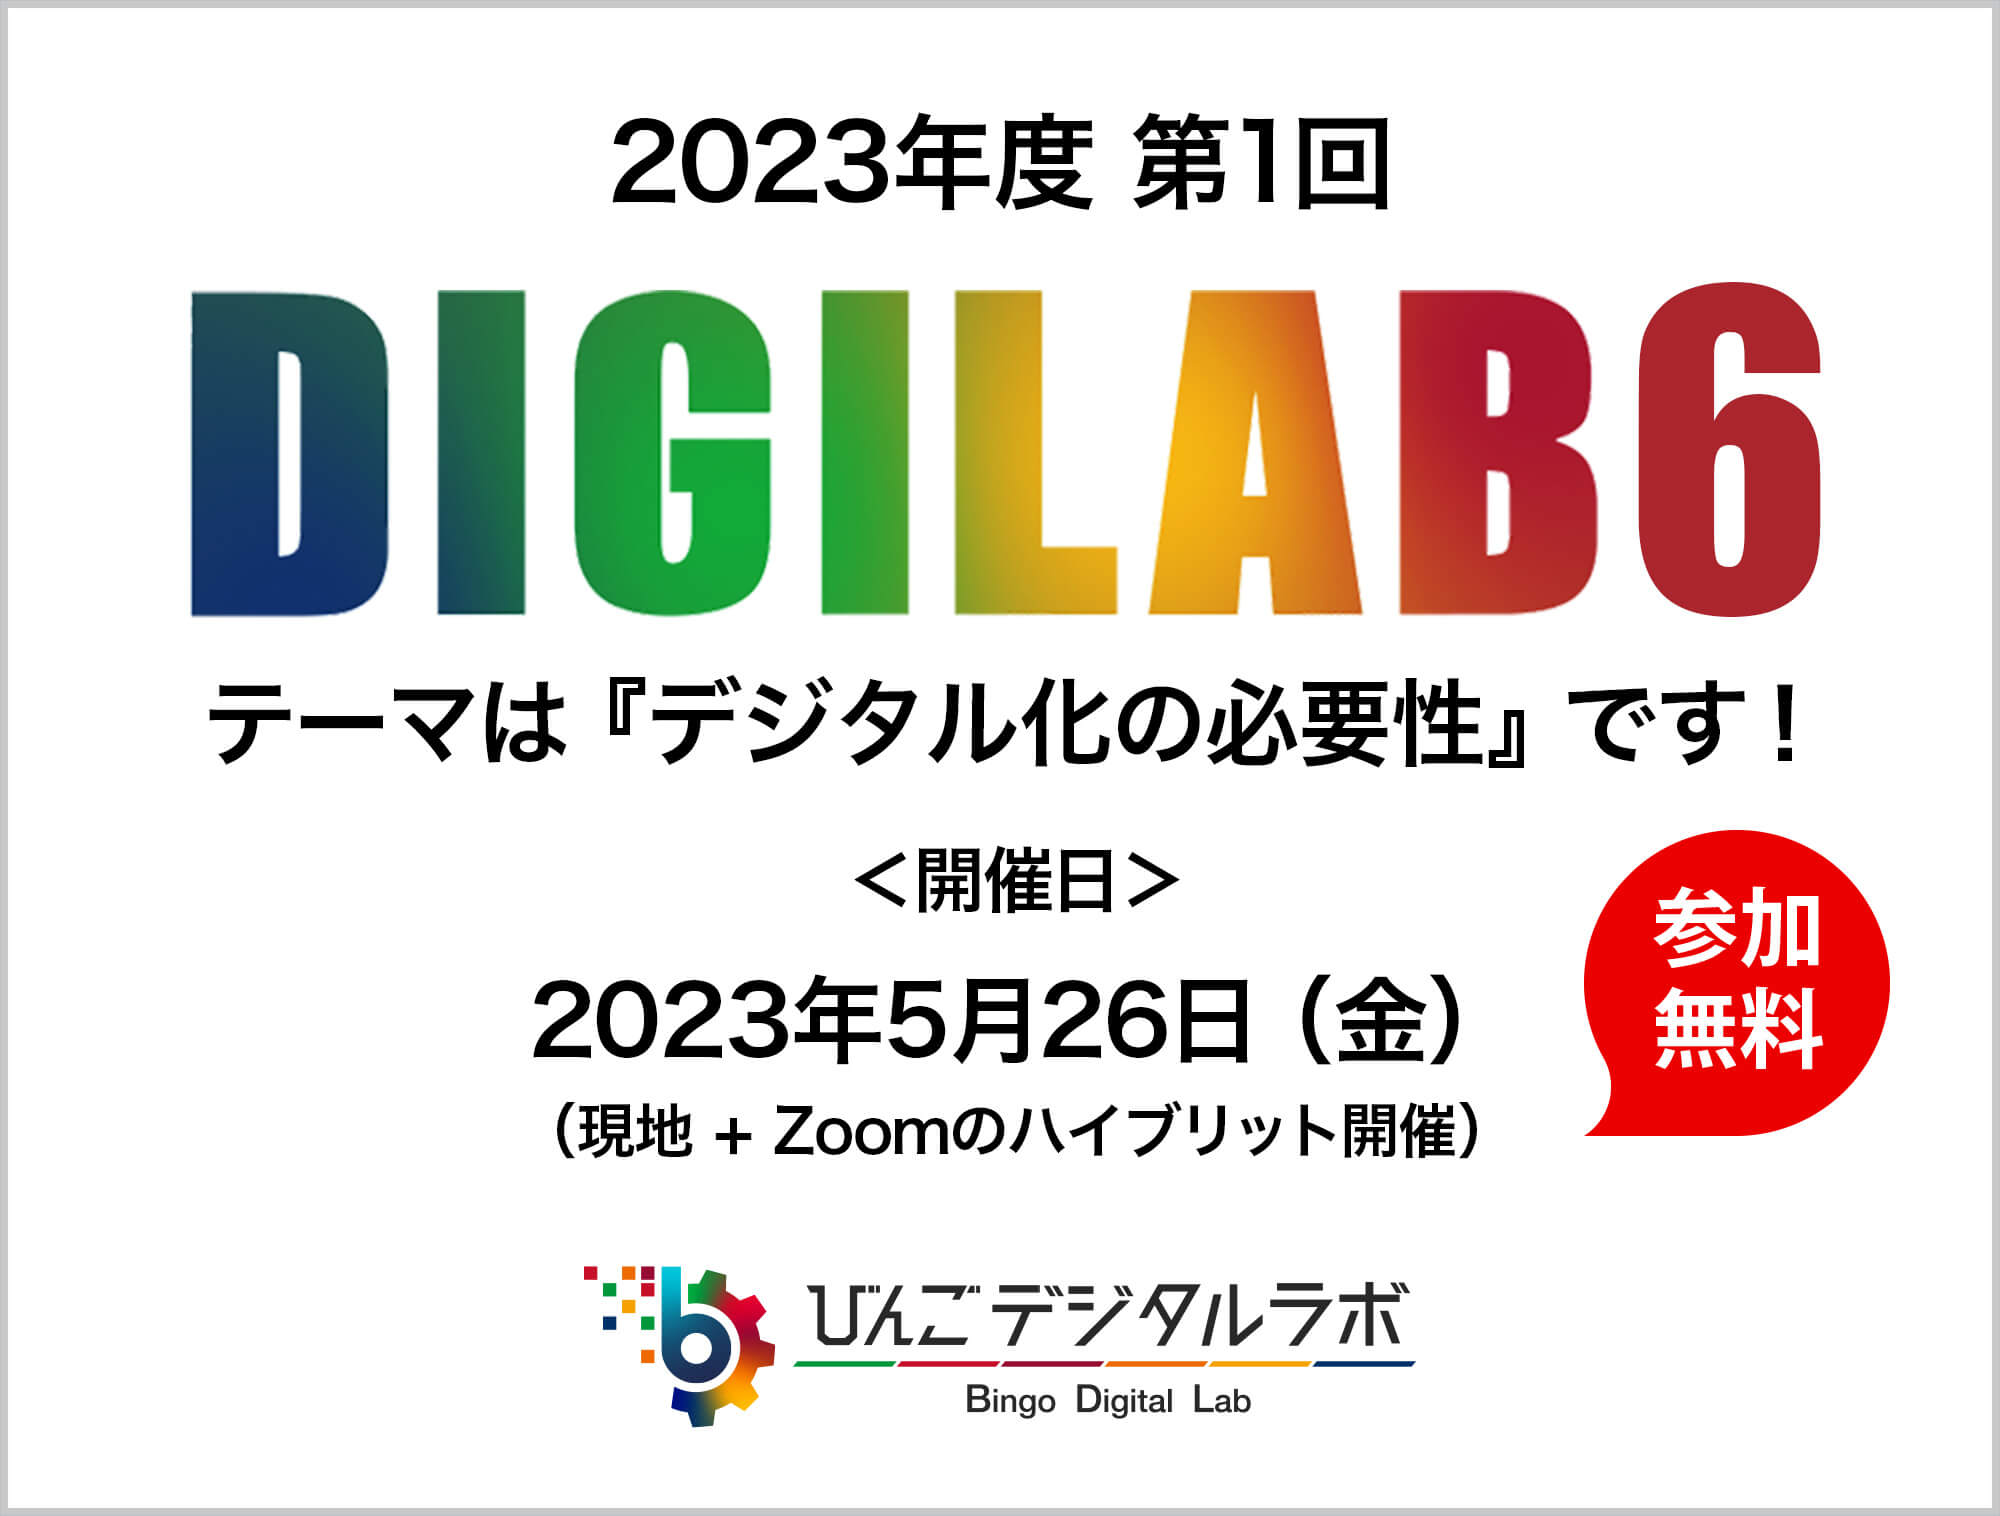 2023年度 第6回びんごデジタルラボイベント『DIGILAB6』をおこないます